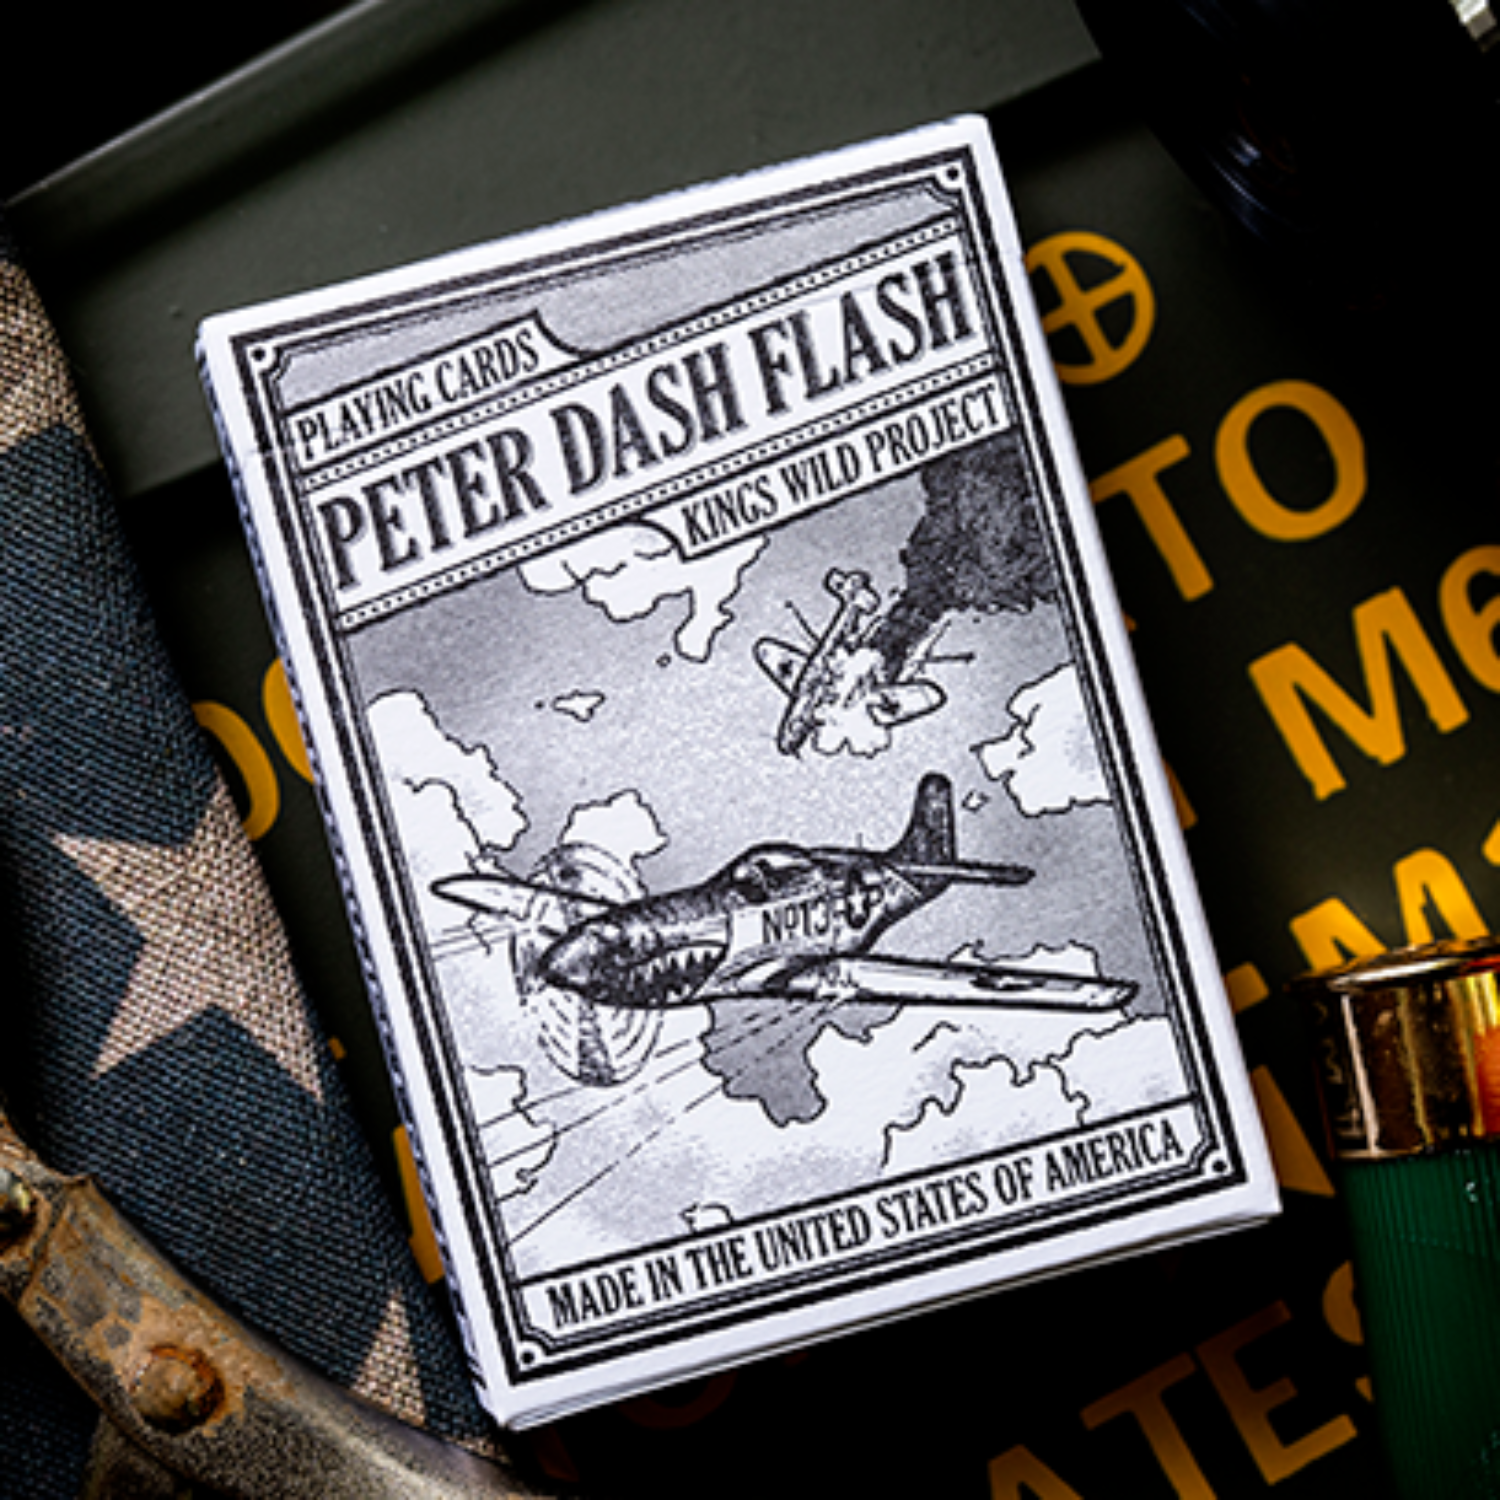 [피터대쉬 플래쉬 P51머스탱]Peter Dash Flash - P51 Mustang Playing Cards by Kings Wild Project Inc.